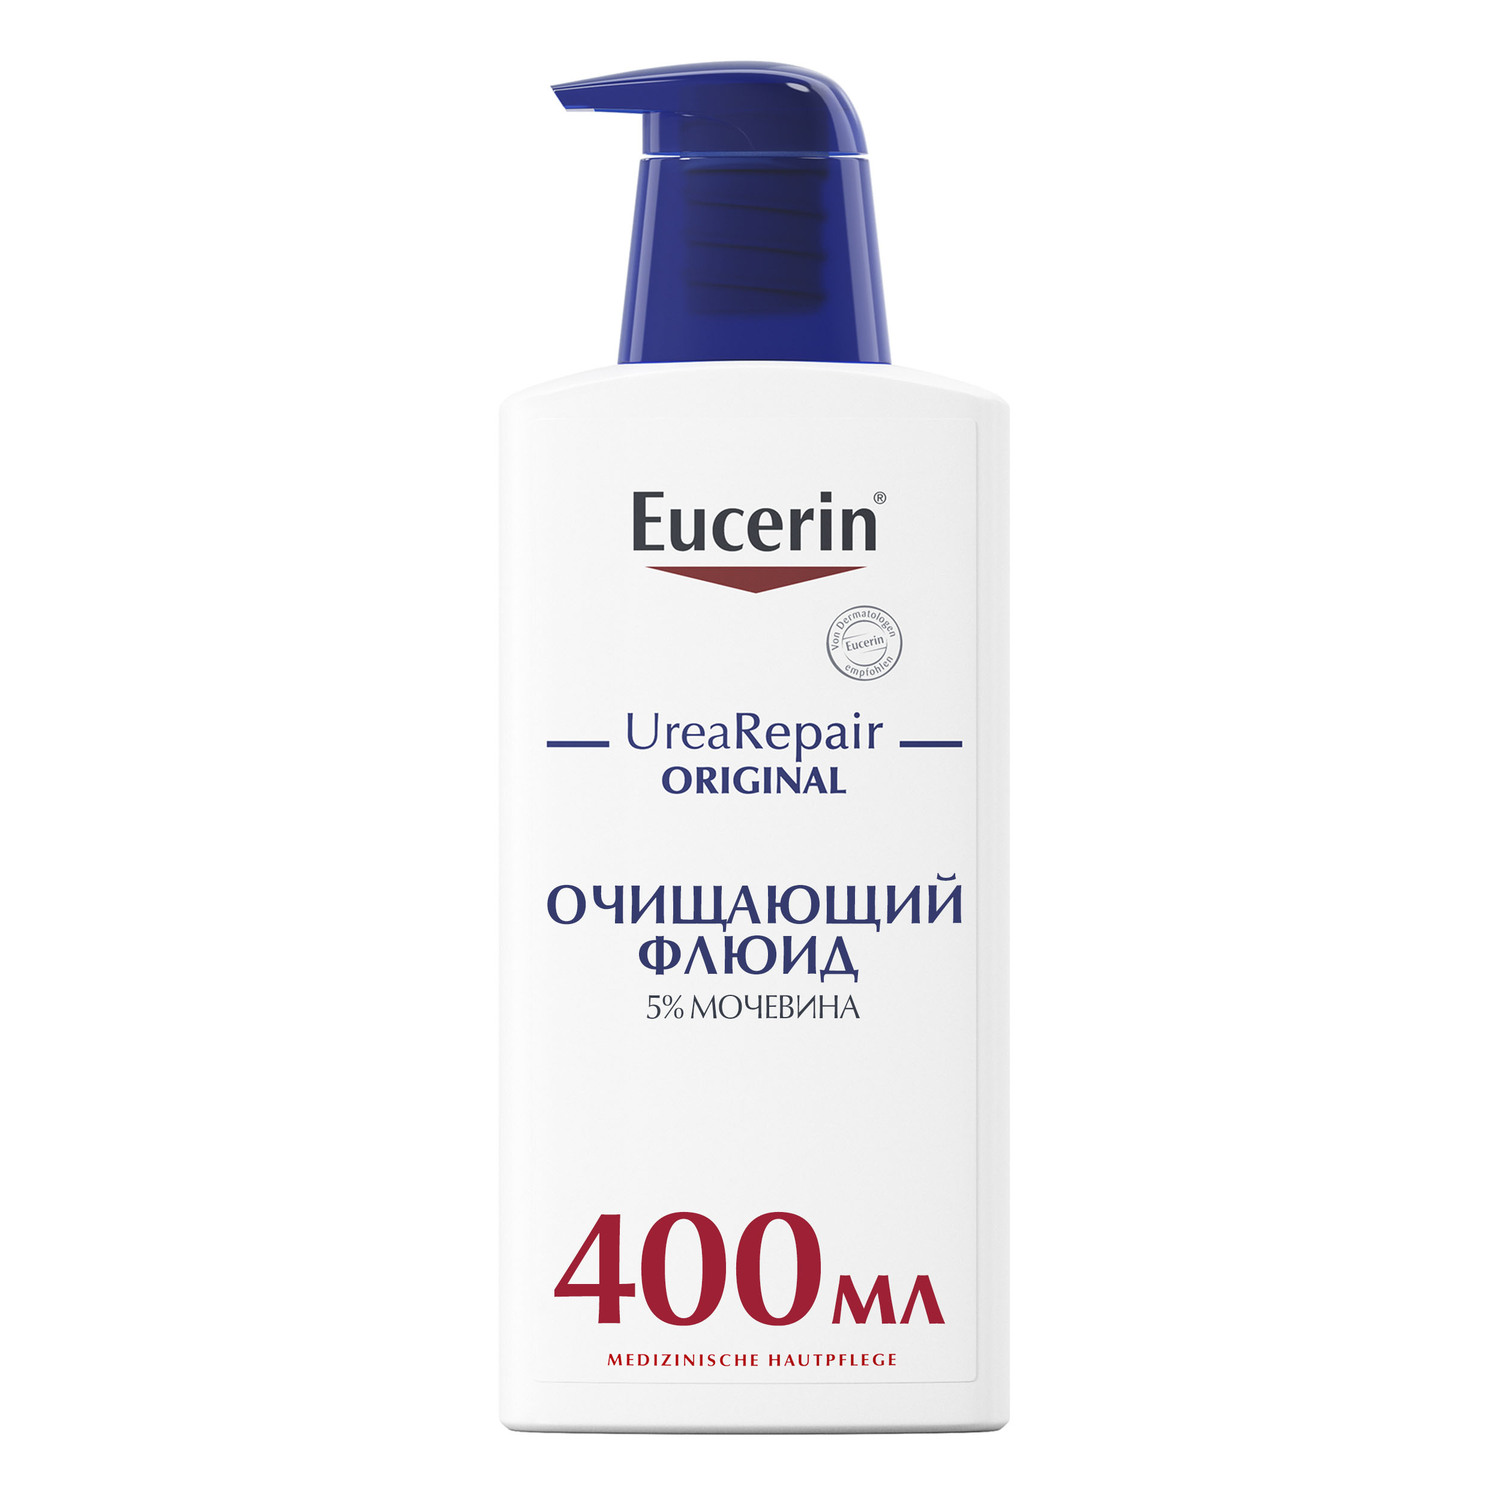 Eucerin Очищающий флюид с 5% мочевиной, 400 мл (Eucerin, Ure